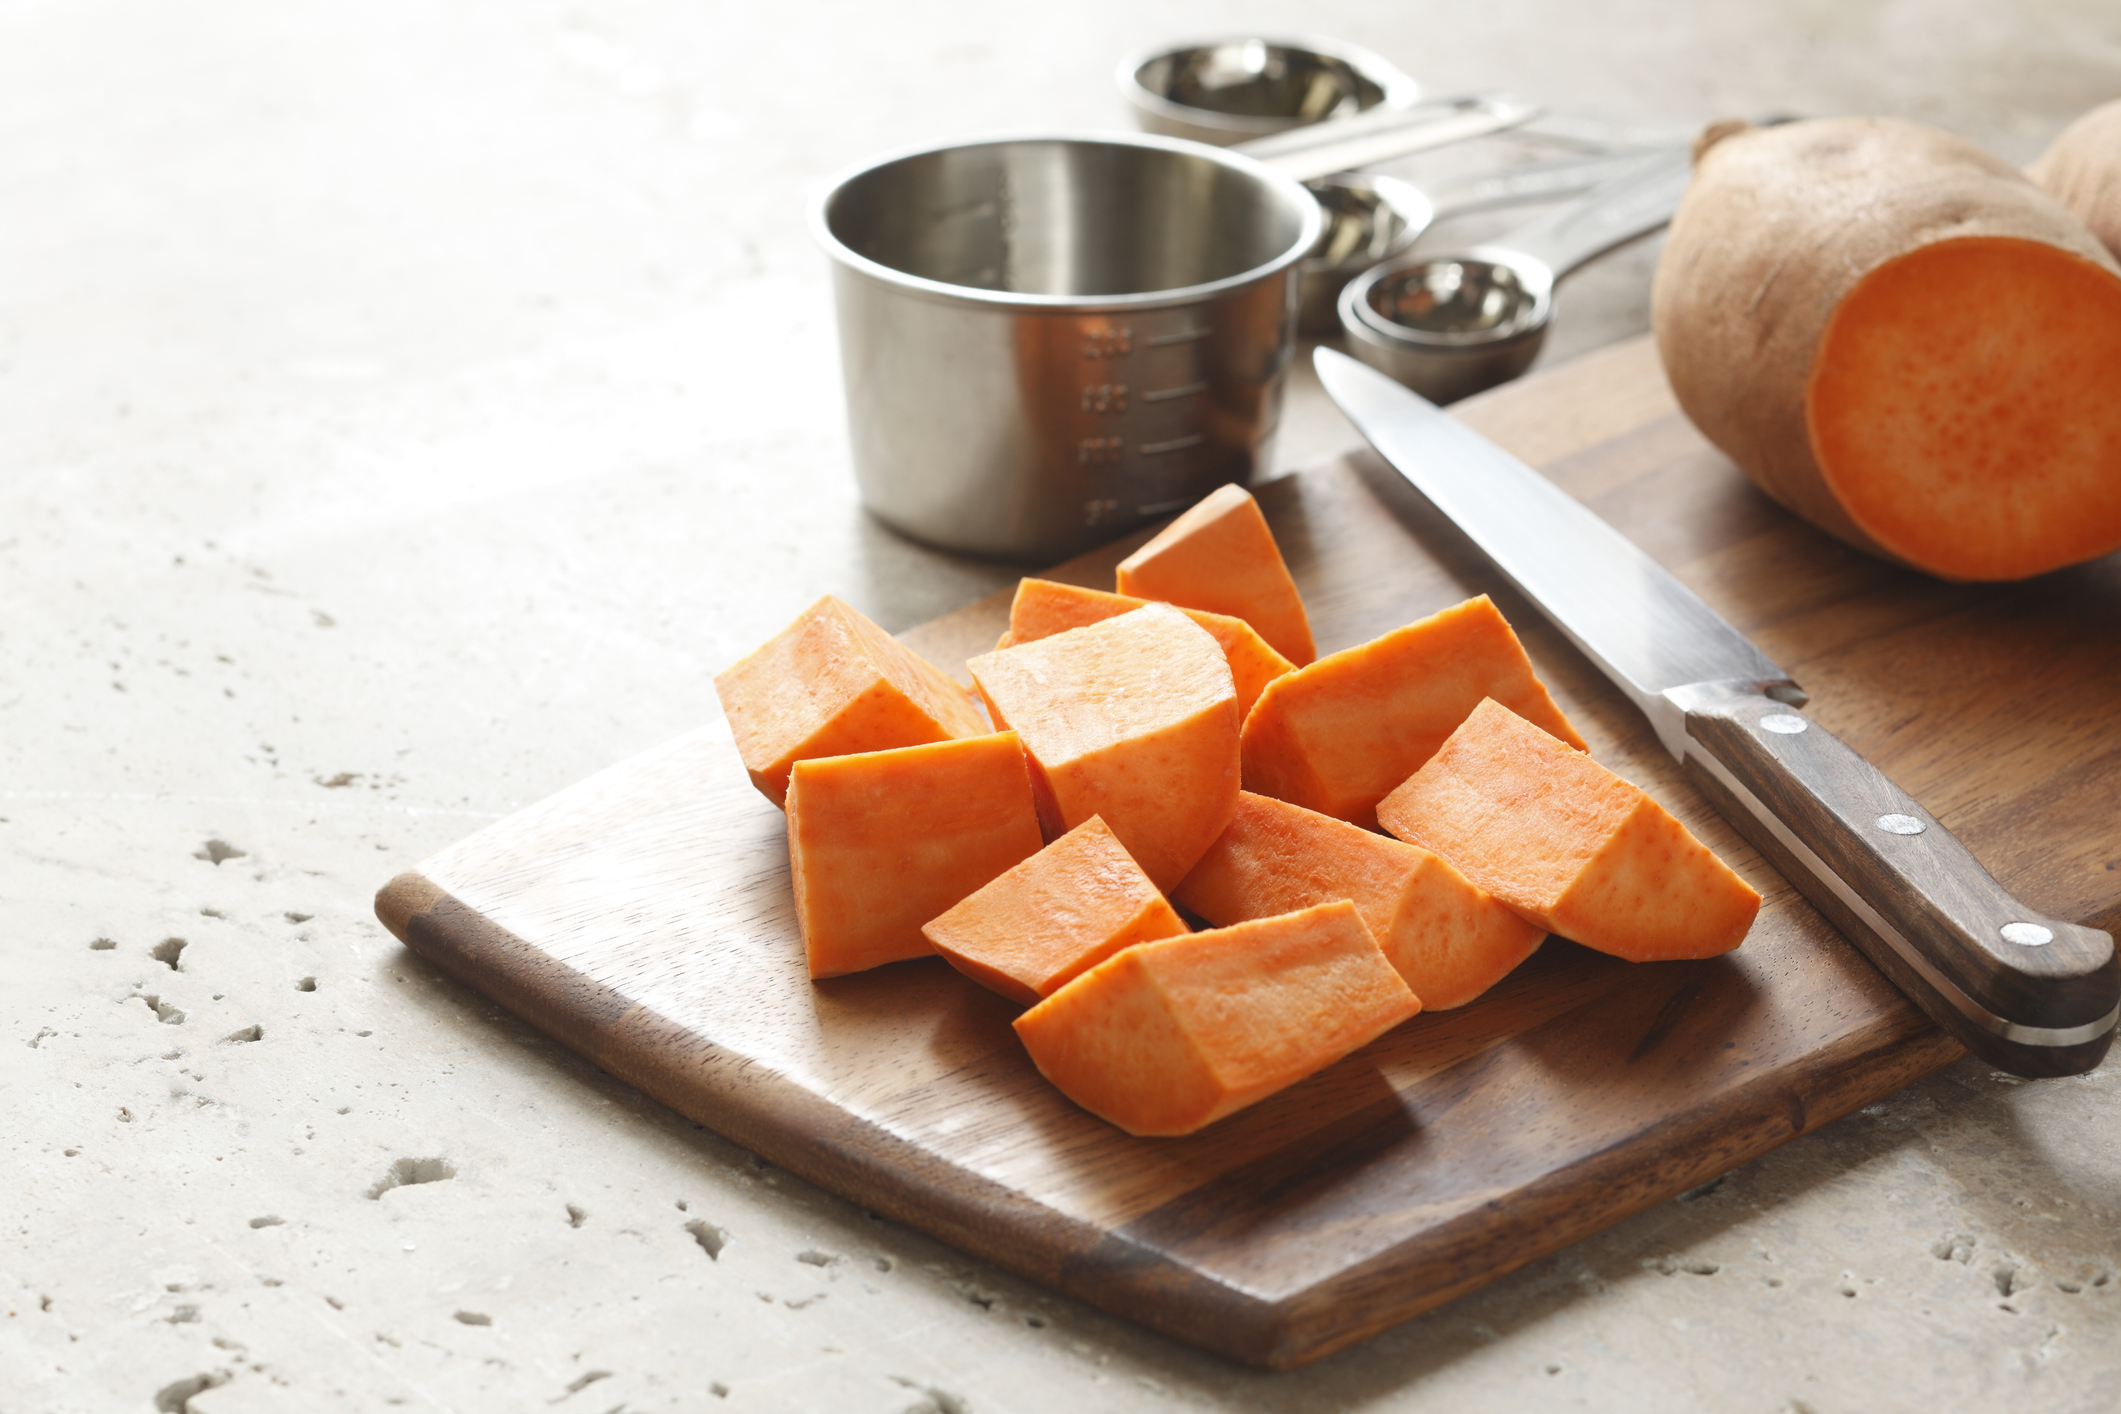 Chopped sweet potato on a cutting board